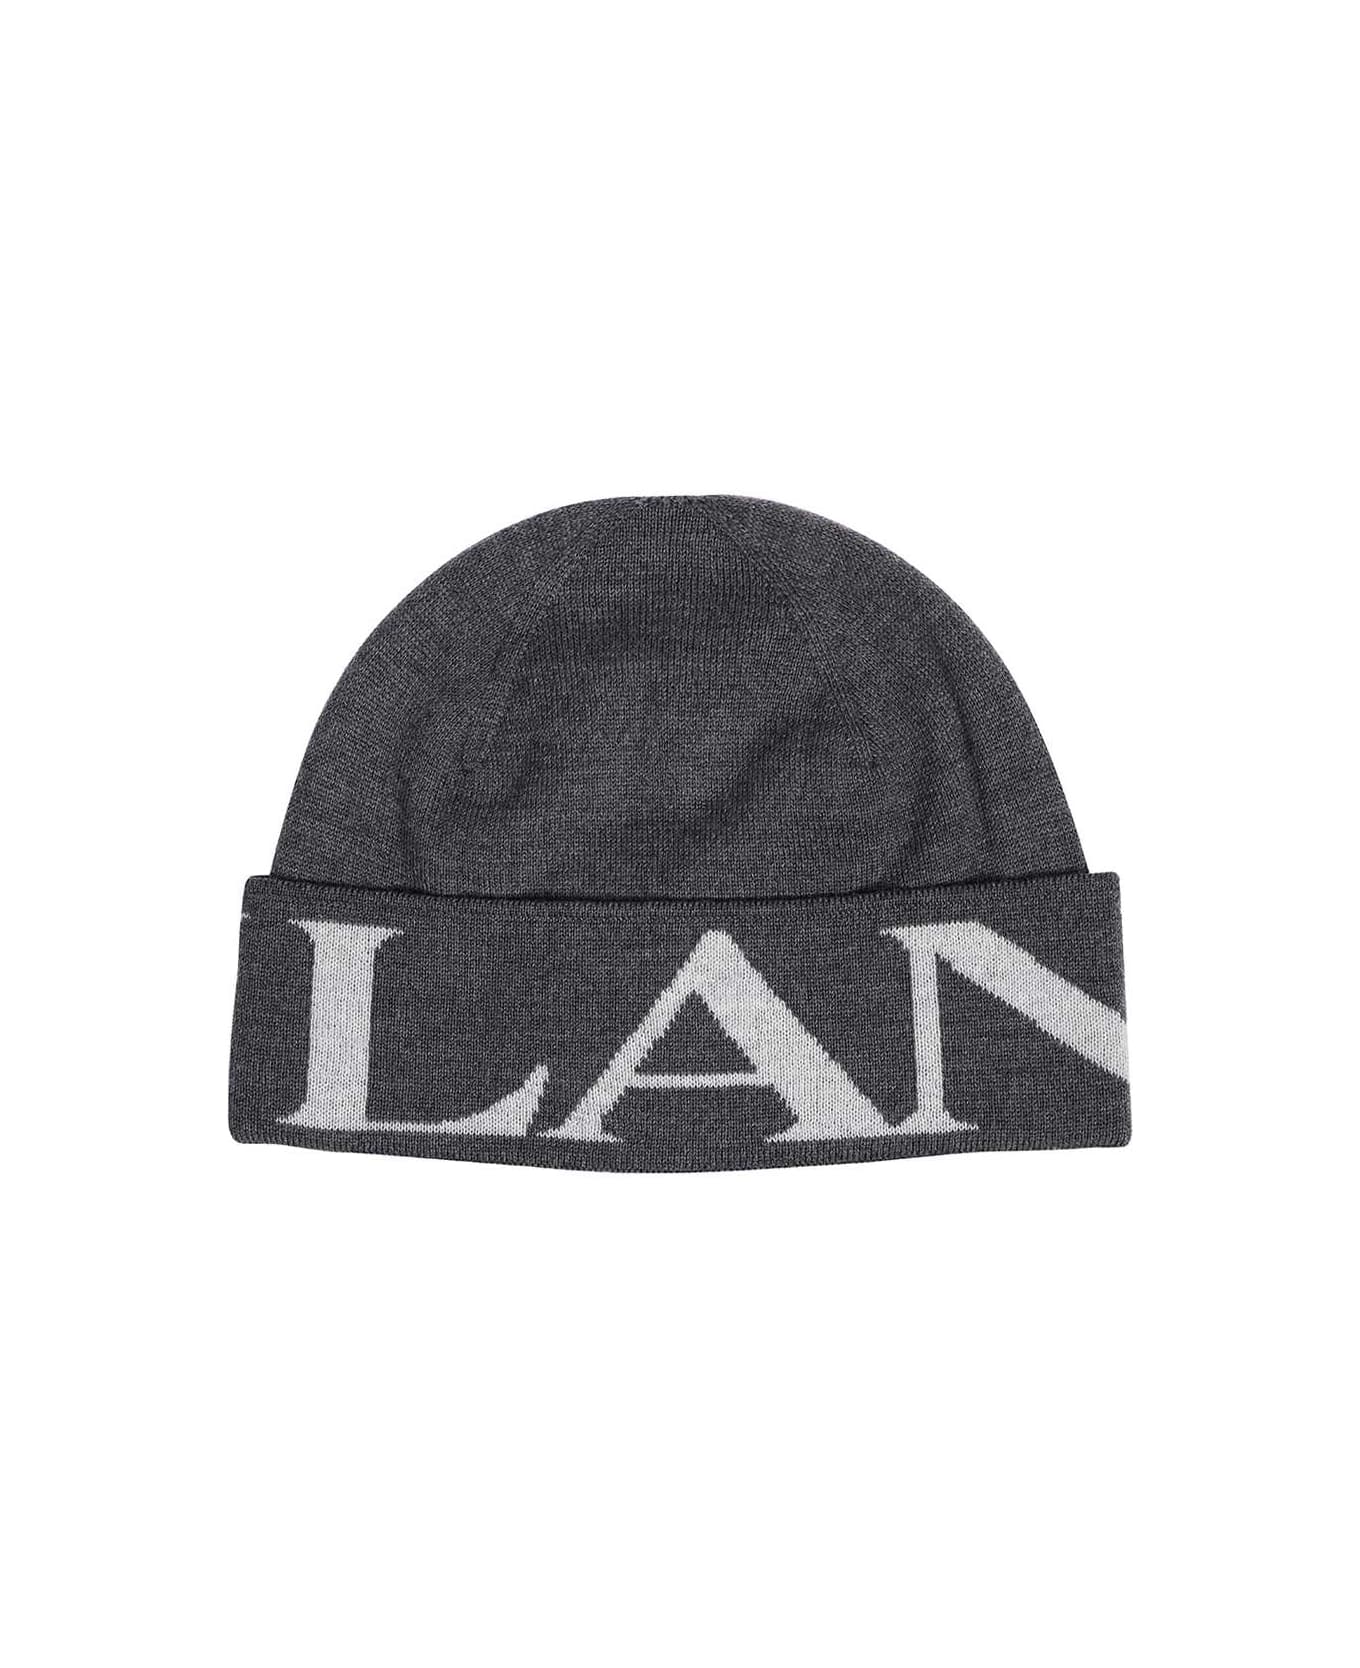 Lanvin Wool Hat - grey